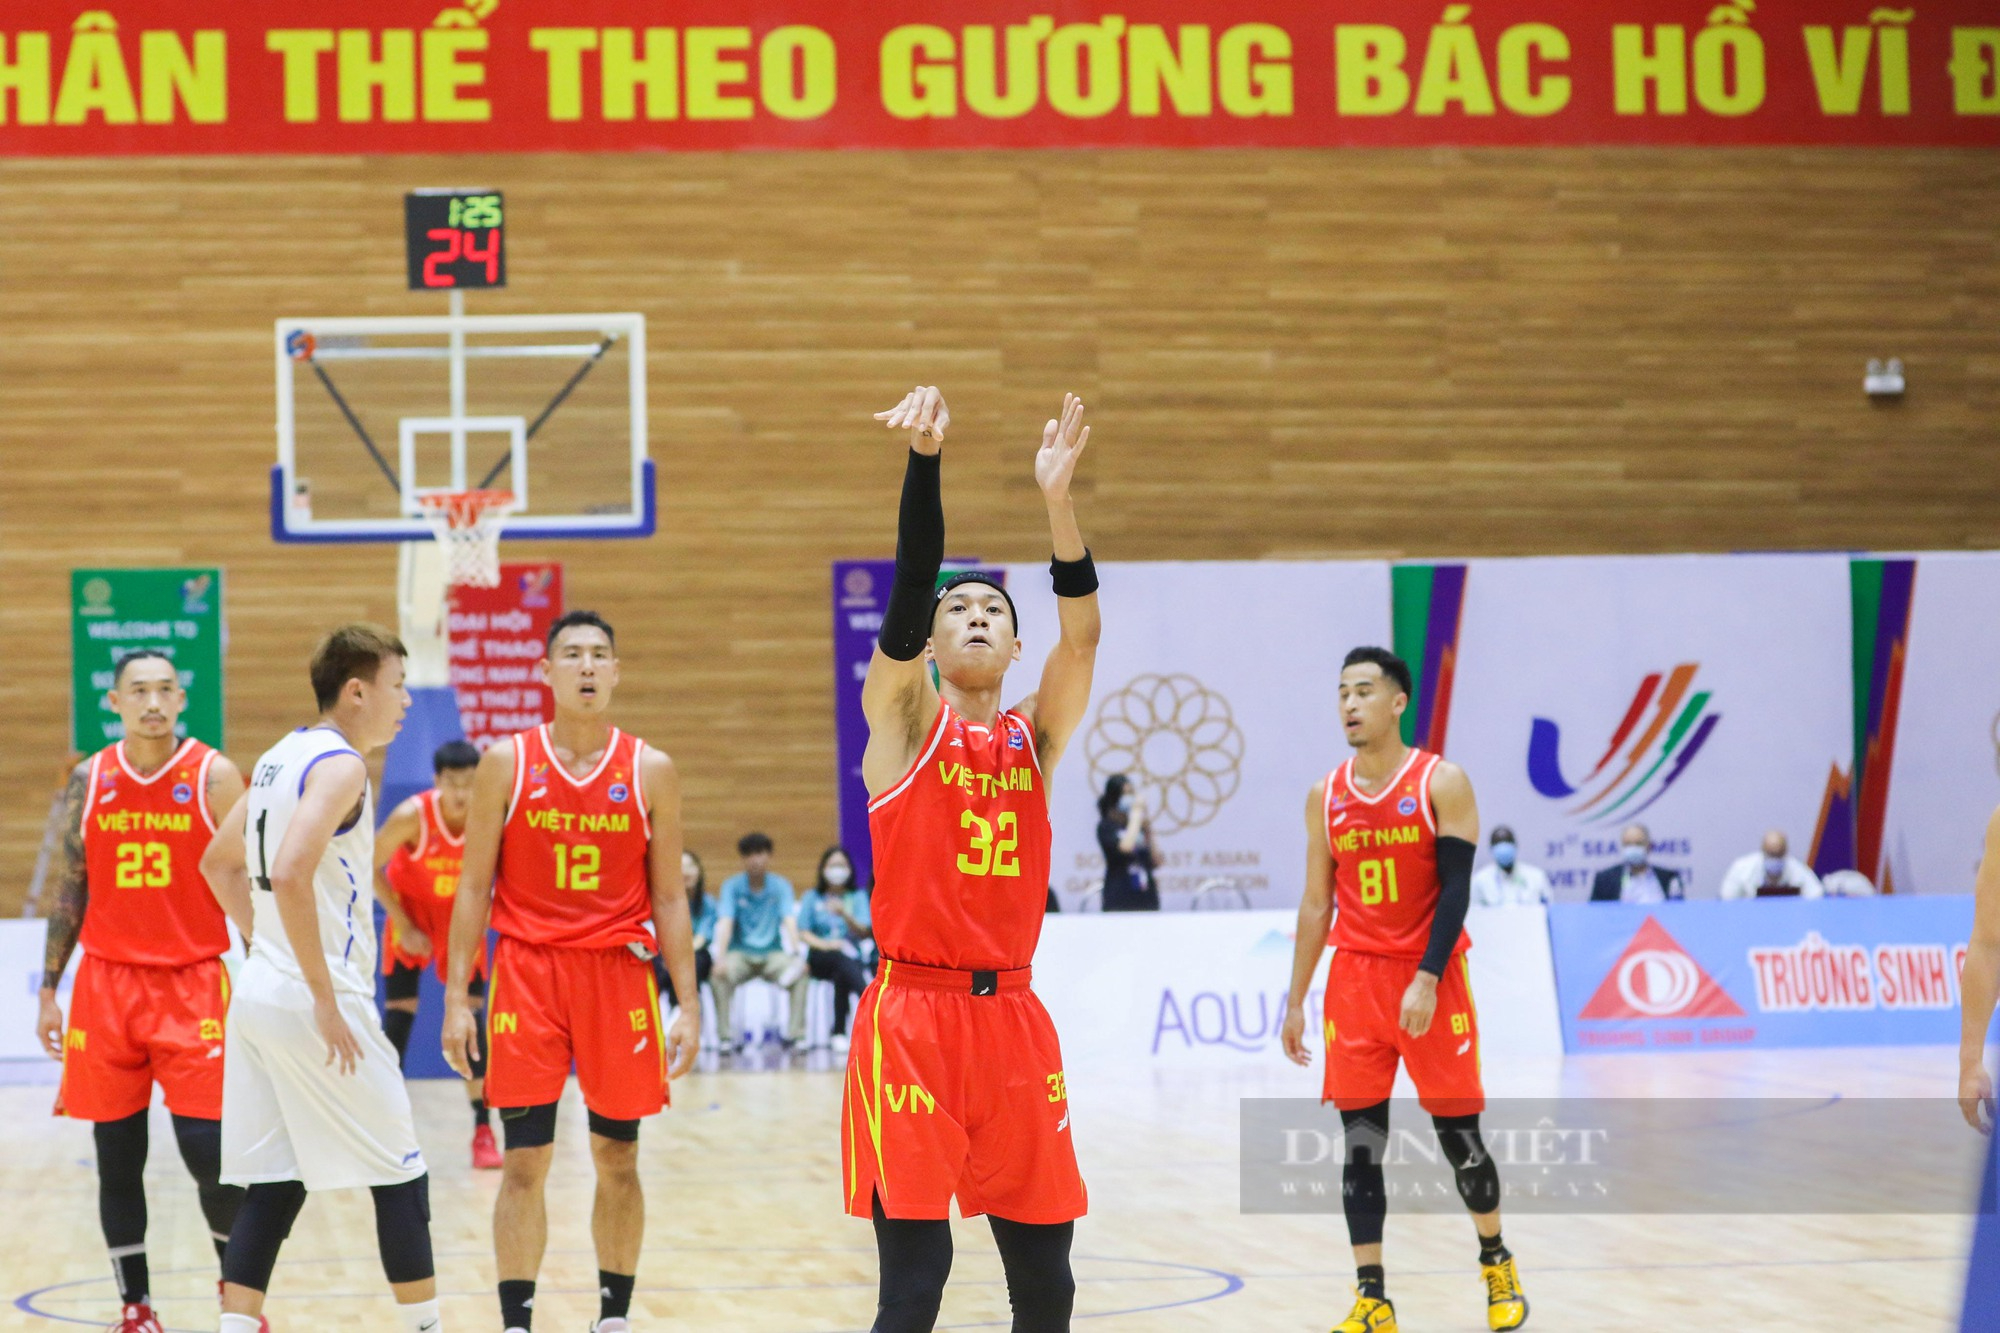 Christian Juzang cùng các nam thần bóng rổ lội ngược dòng giành chiến thắng tại SEA games 31 - Ảnh 1.